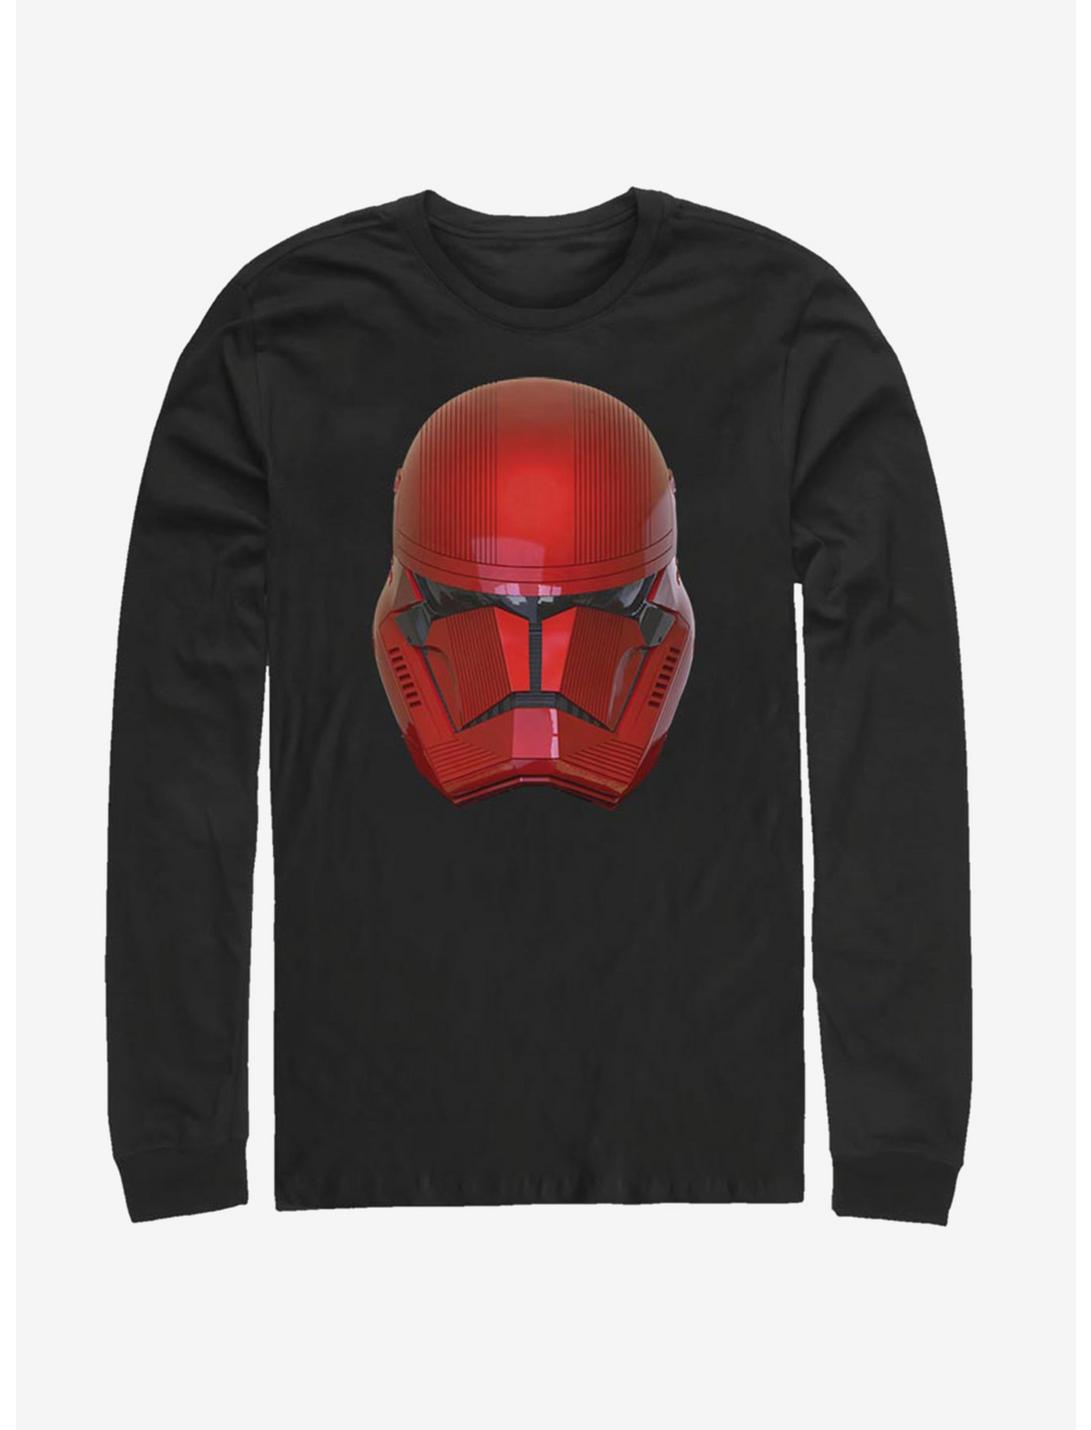 Star Wars Episode IX Rise of Skywalker Red Trooper Red Helm Long-Sleeve T-Shirt, BLACK, hi-res